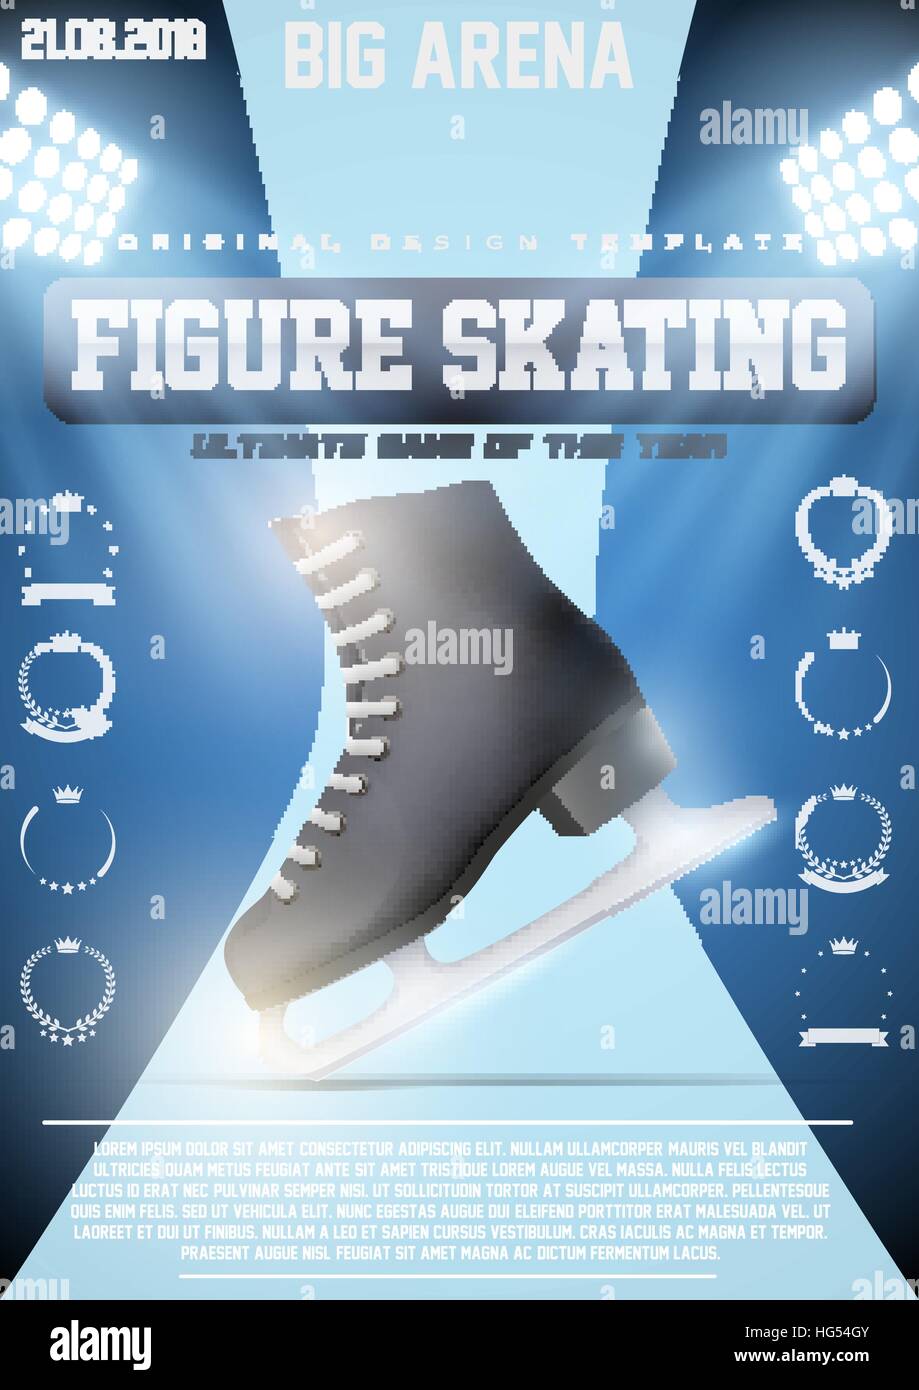 Modèle d'affiche de patinage artistique sur glace Illustration de Vecteur